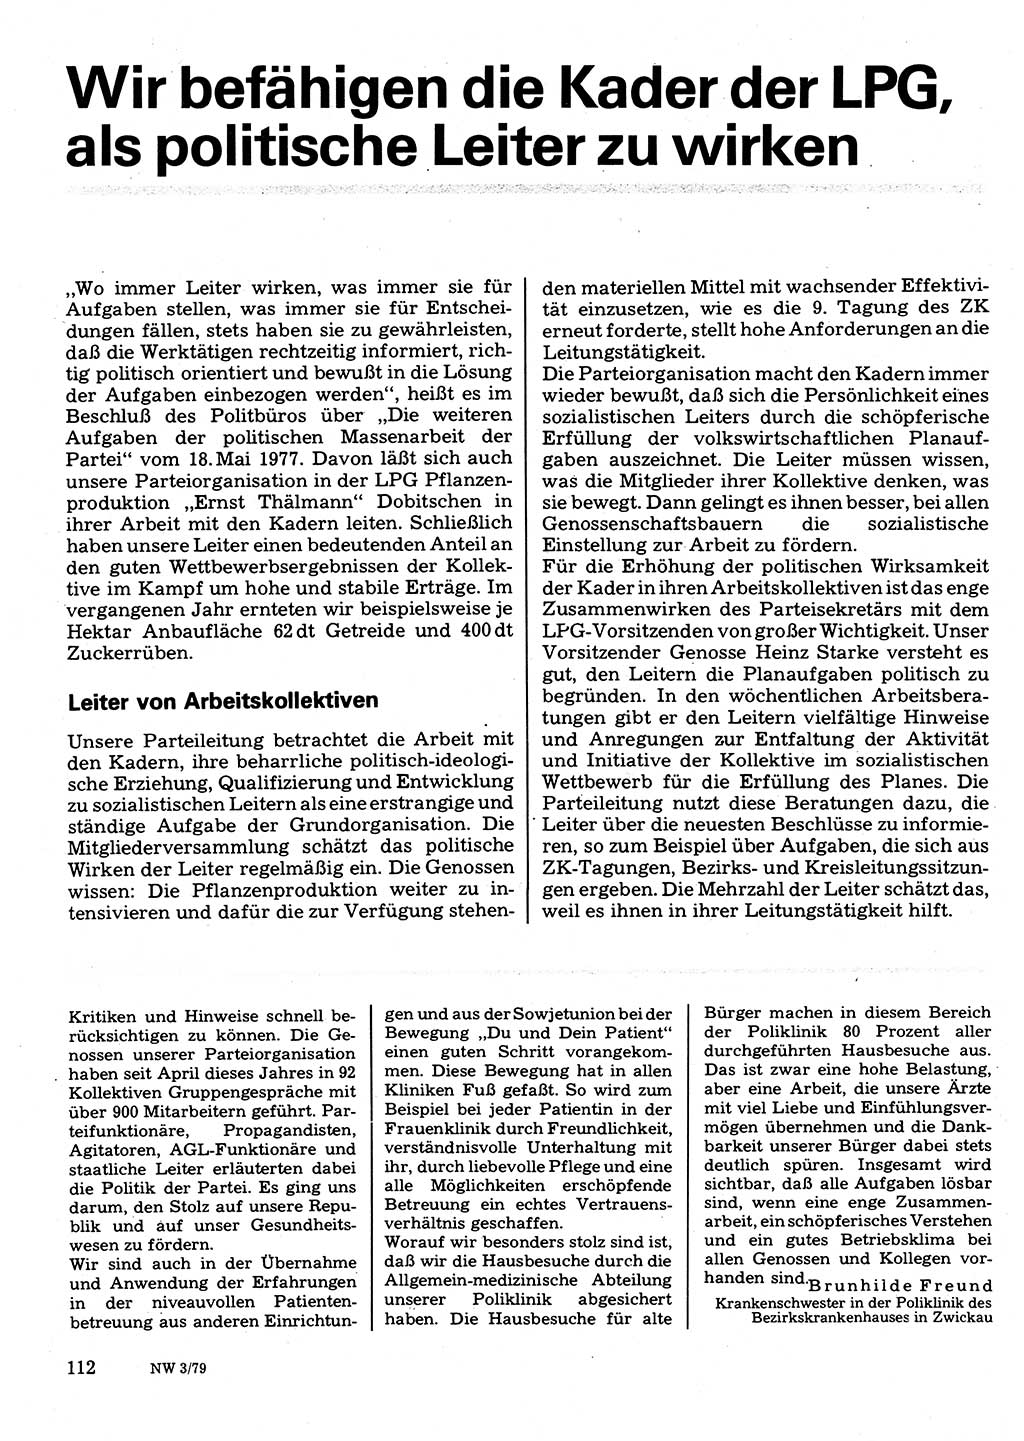 Neuer Weg (NW), Organ des Zentralkomitees (ZK) der SED (Sozialistische Einheitspartei Deutschlands) für Fragen des Parteilebens, 34. Jahrgang [Deutsche Demokratische Republik (DDR)] 1979, Seite 112 (NW ZK SED DDR 1979, S. 112)